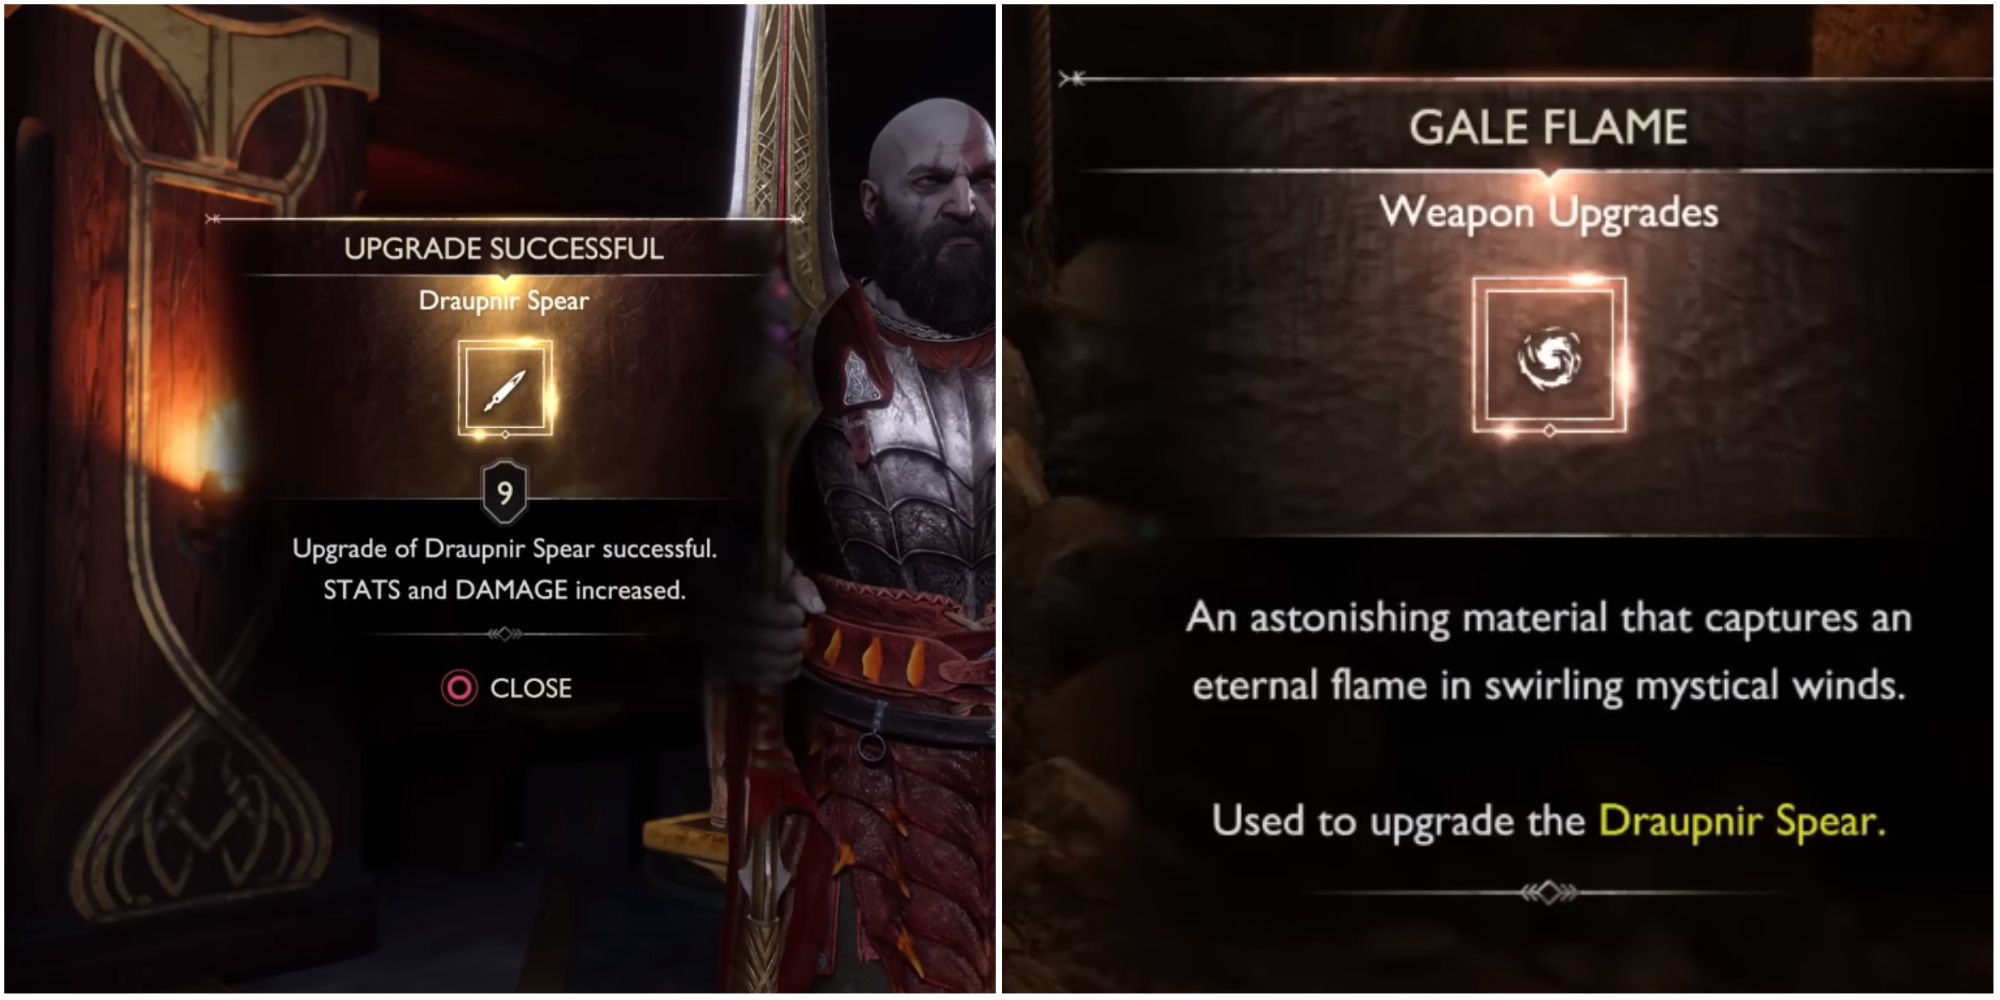 Split image showing Kratos upgrading the Draupnir Spear.